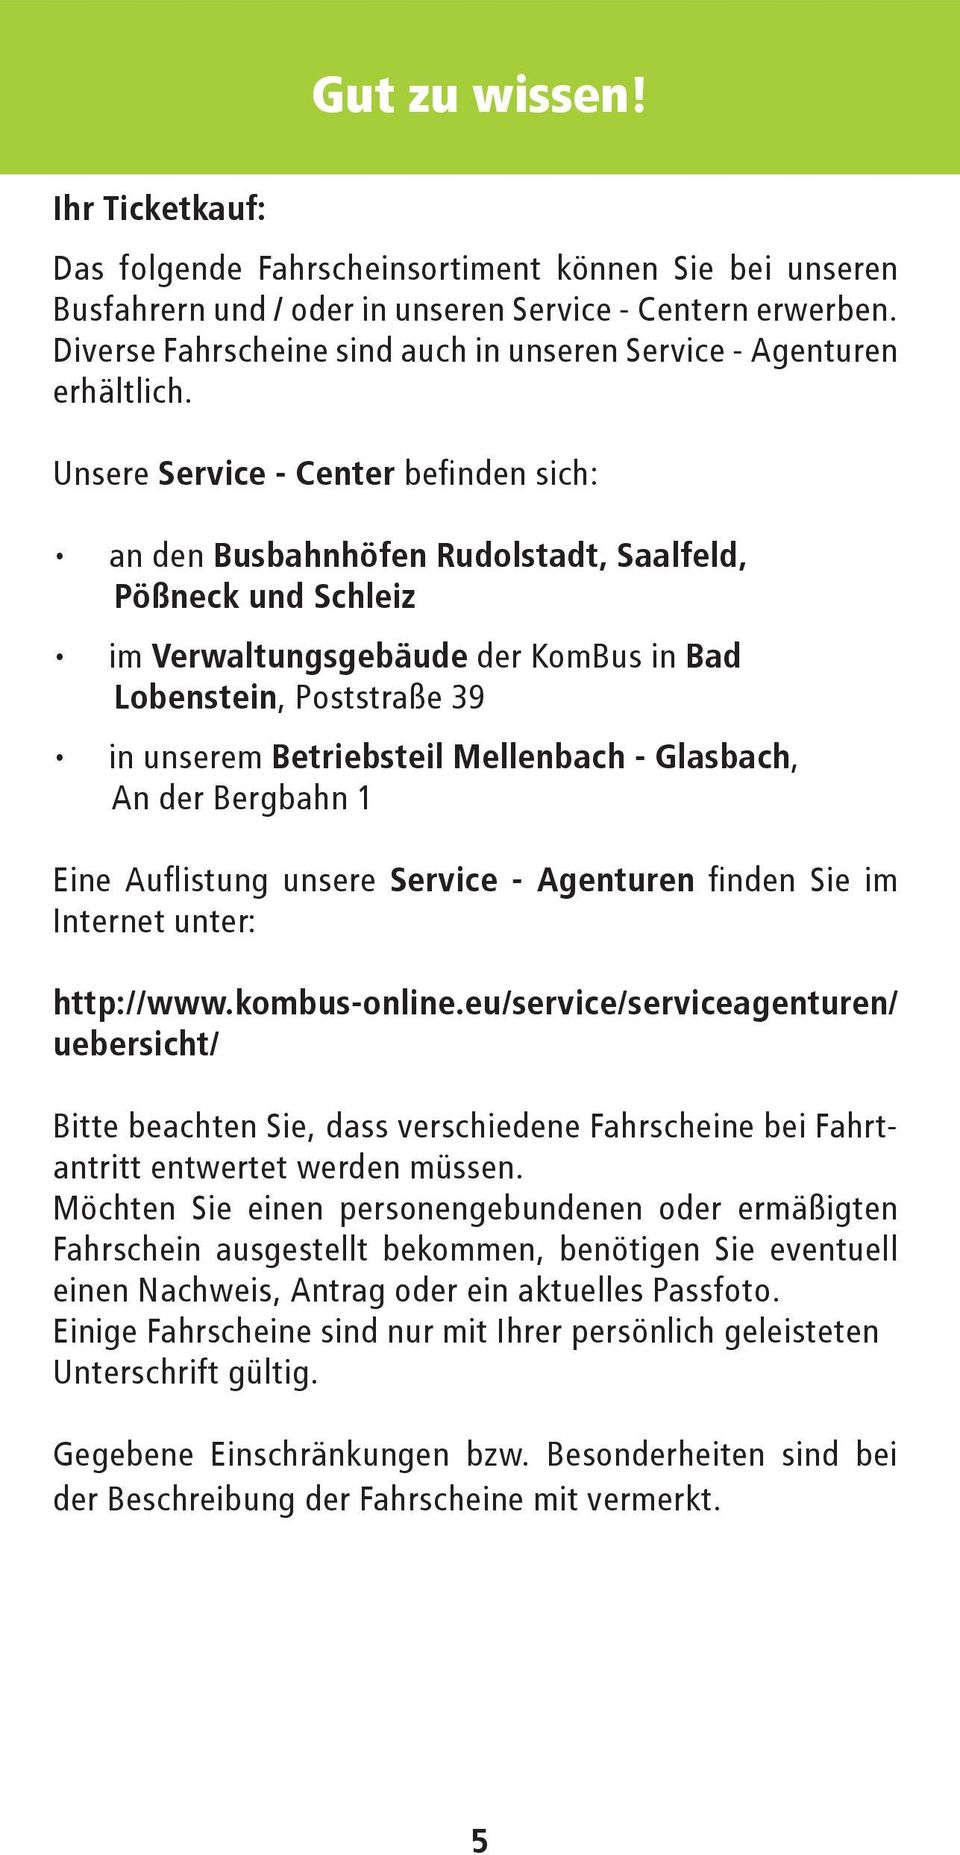 Unsere Service - Center befinden sich: an den Busbahnhöfen Rudolstadt, Saalfeld, Pößneck und Schleiz im Verwaltungsgebäude der KomBus in Bad Lobenstein, Poststraße 39 in unserem Betriebsteil